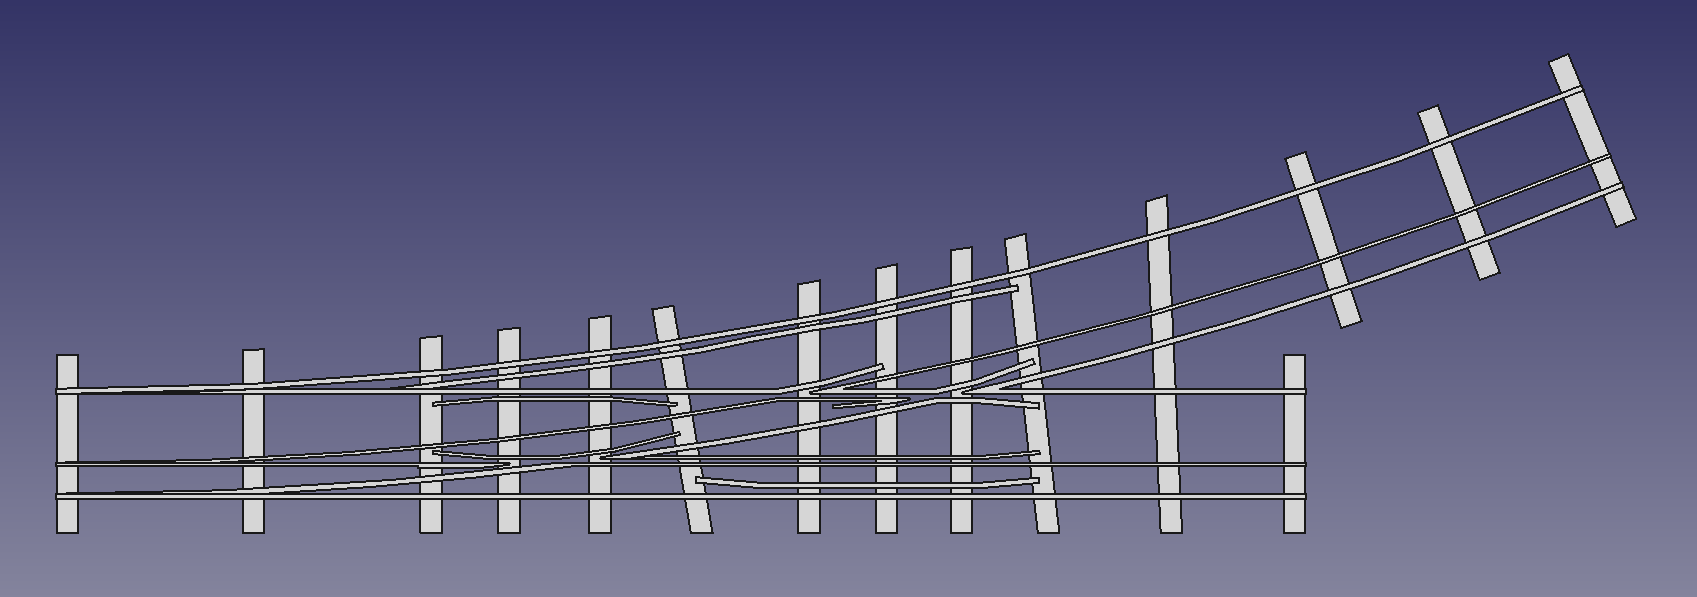 Draufsicht auf eine Dreischienenweiche für die Spurweiten 5 Zoll & 7 ¼ Zoll (FreeCAD Zeichnung)